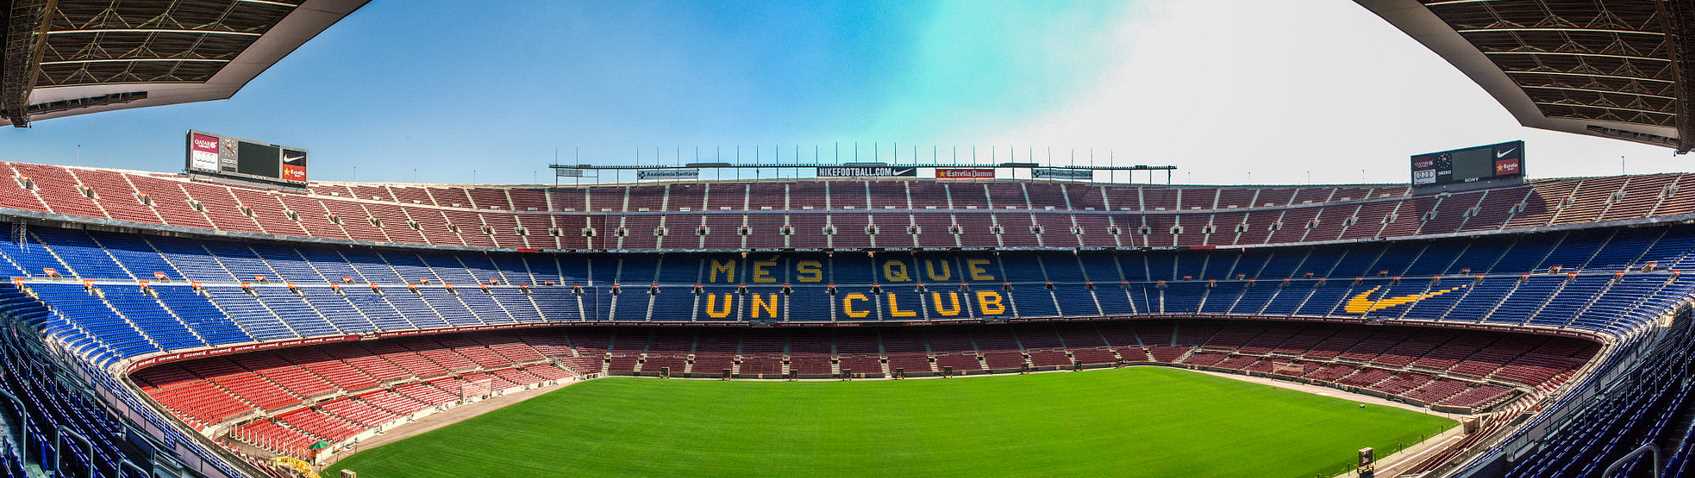 Квест на стадионе Camp Nou!